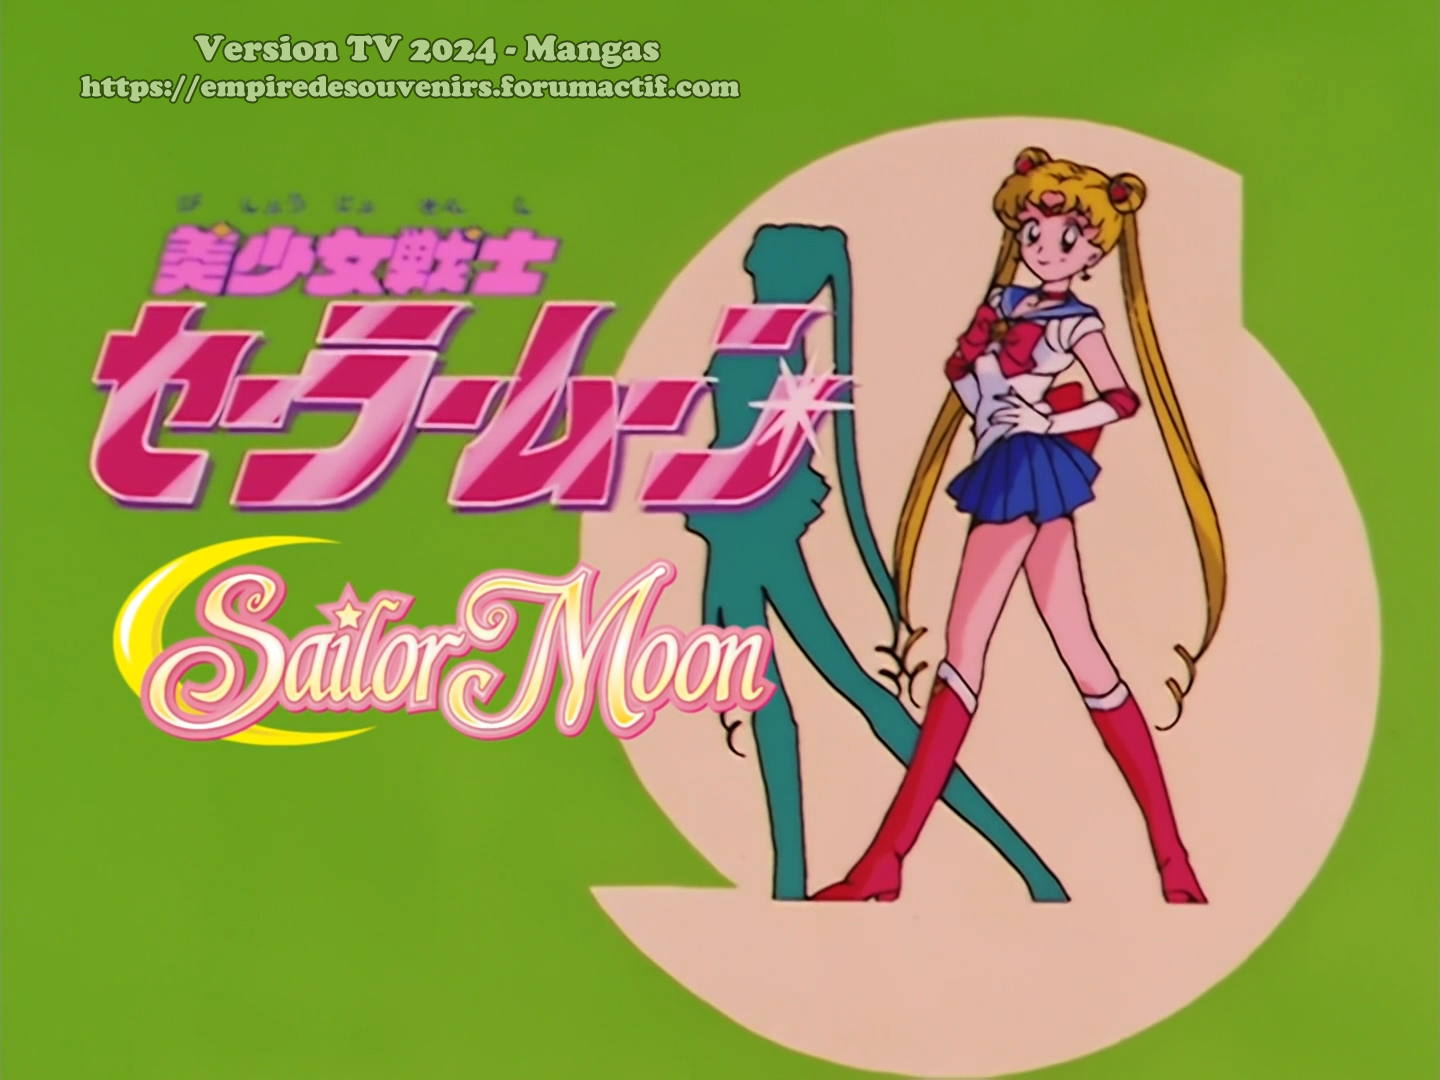 Sailor Moon sur Mangas ! 5jen